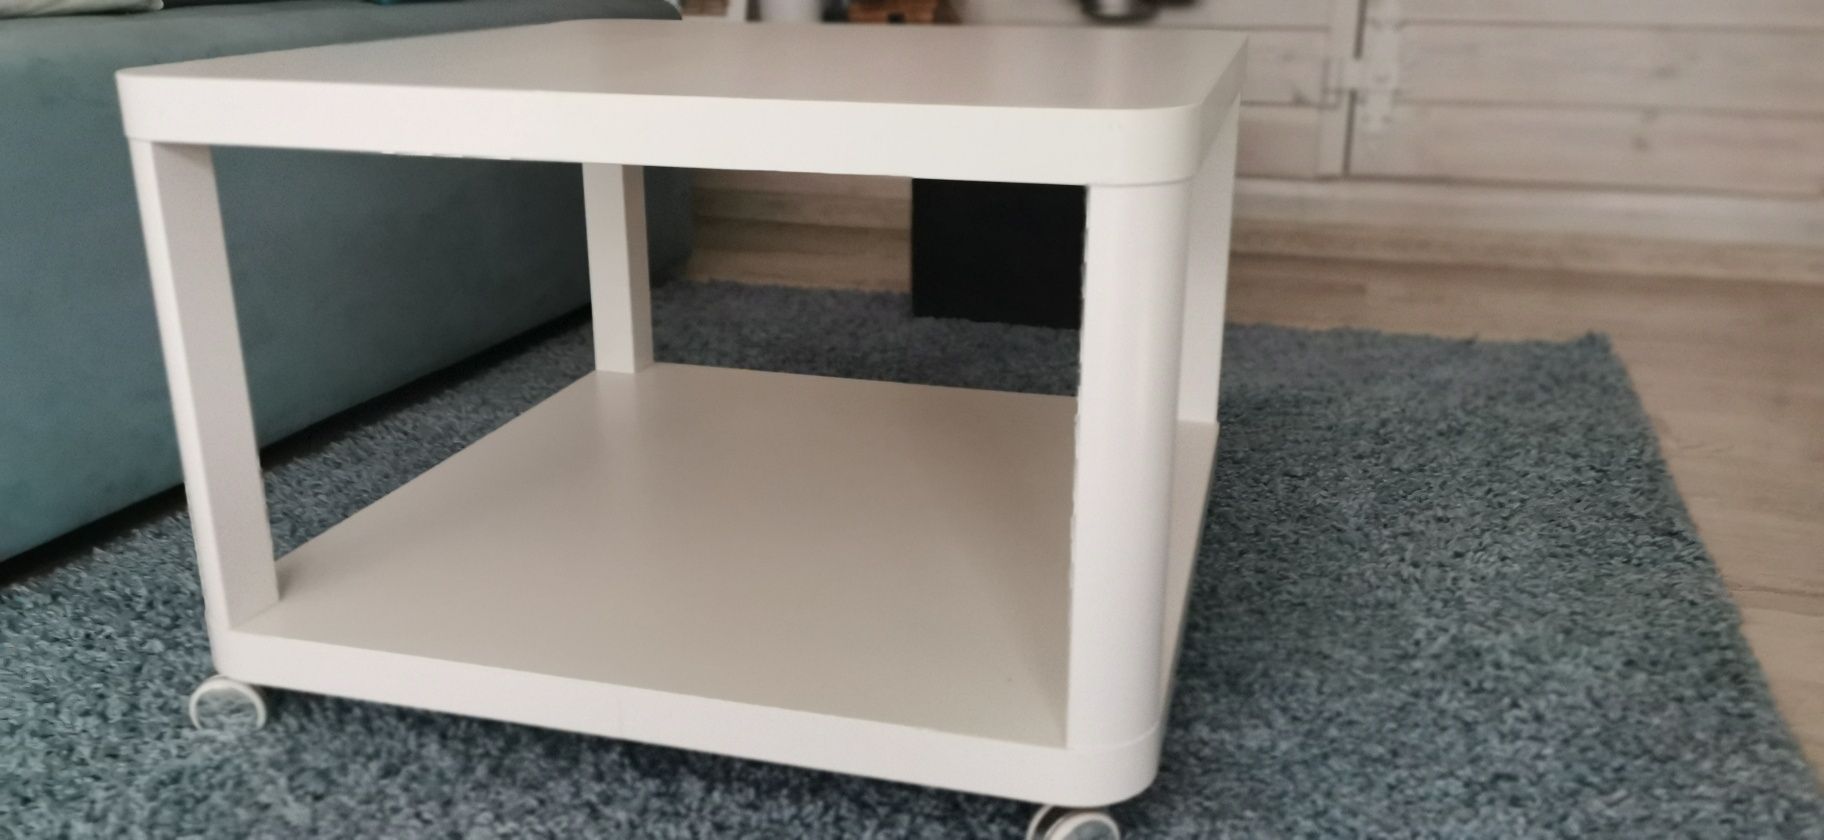 Stolik biały na kółkach Ikea kawowy 64x64 cm